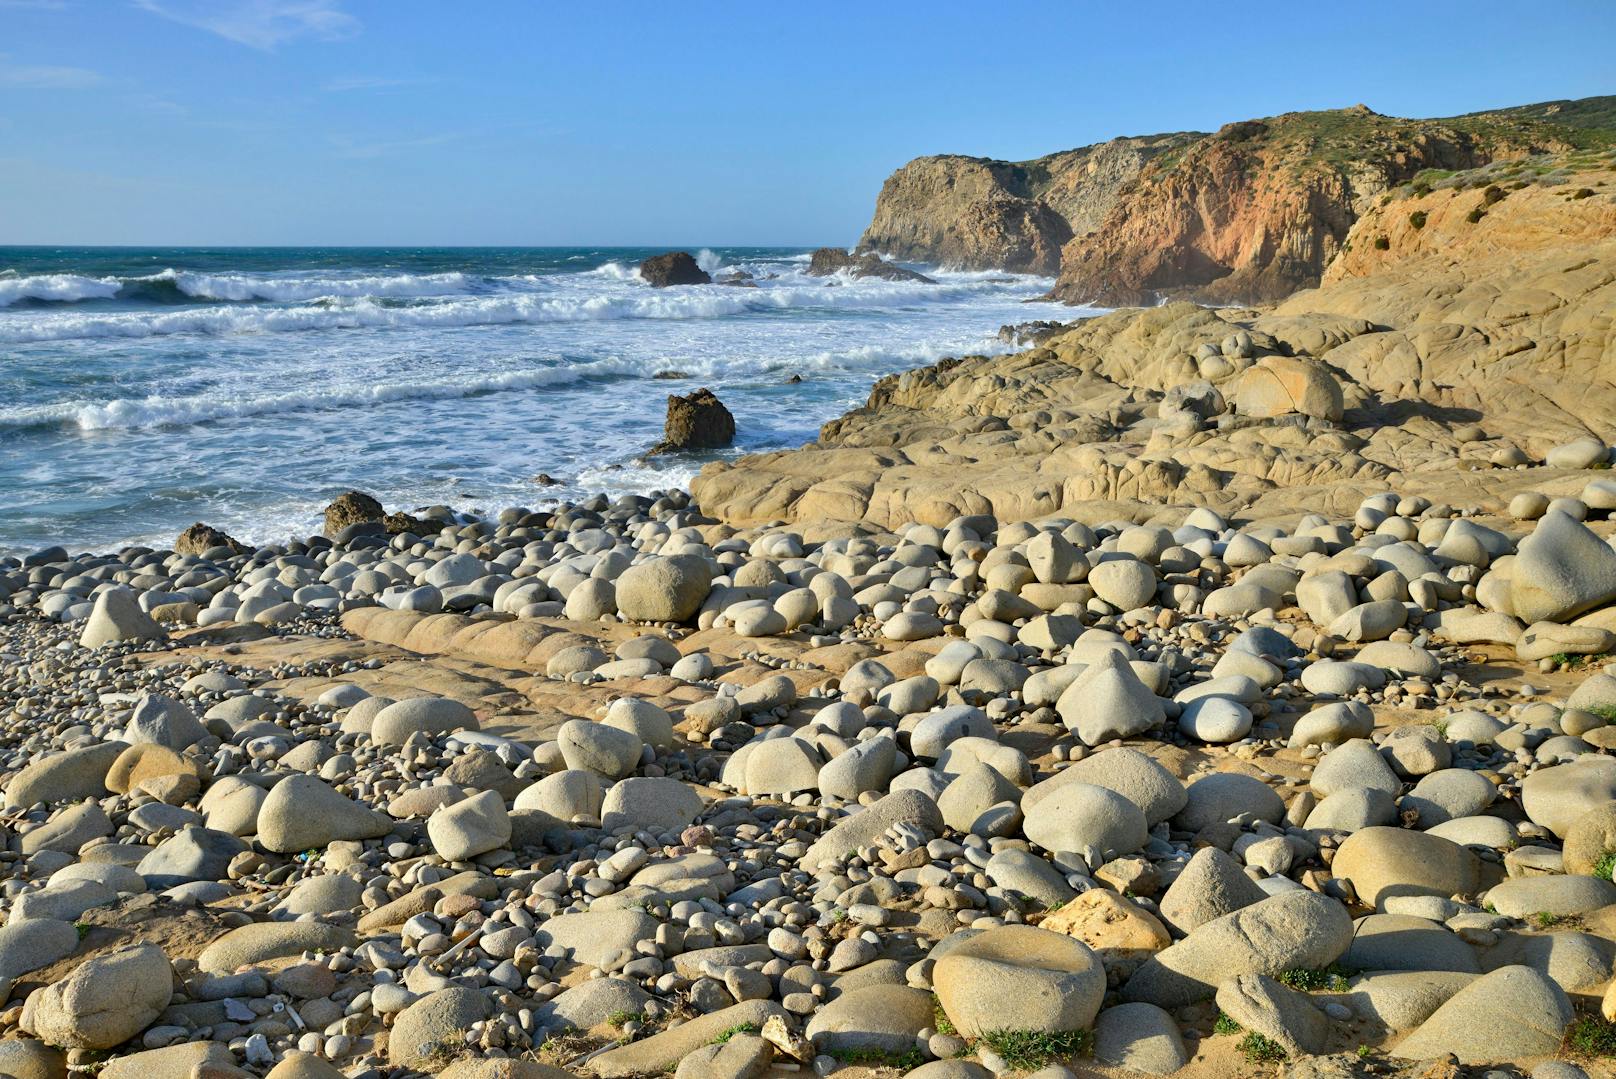 Tourist nimmt Steine von Strand mit – 3.000 Euro Strafe